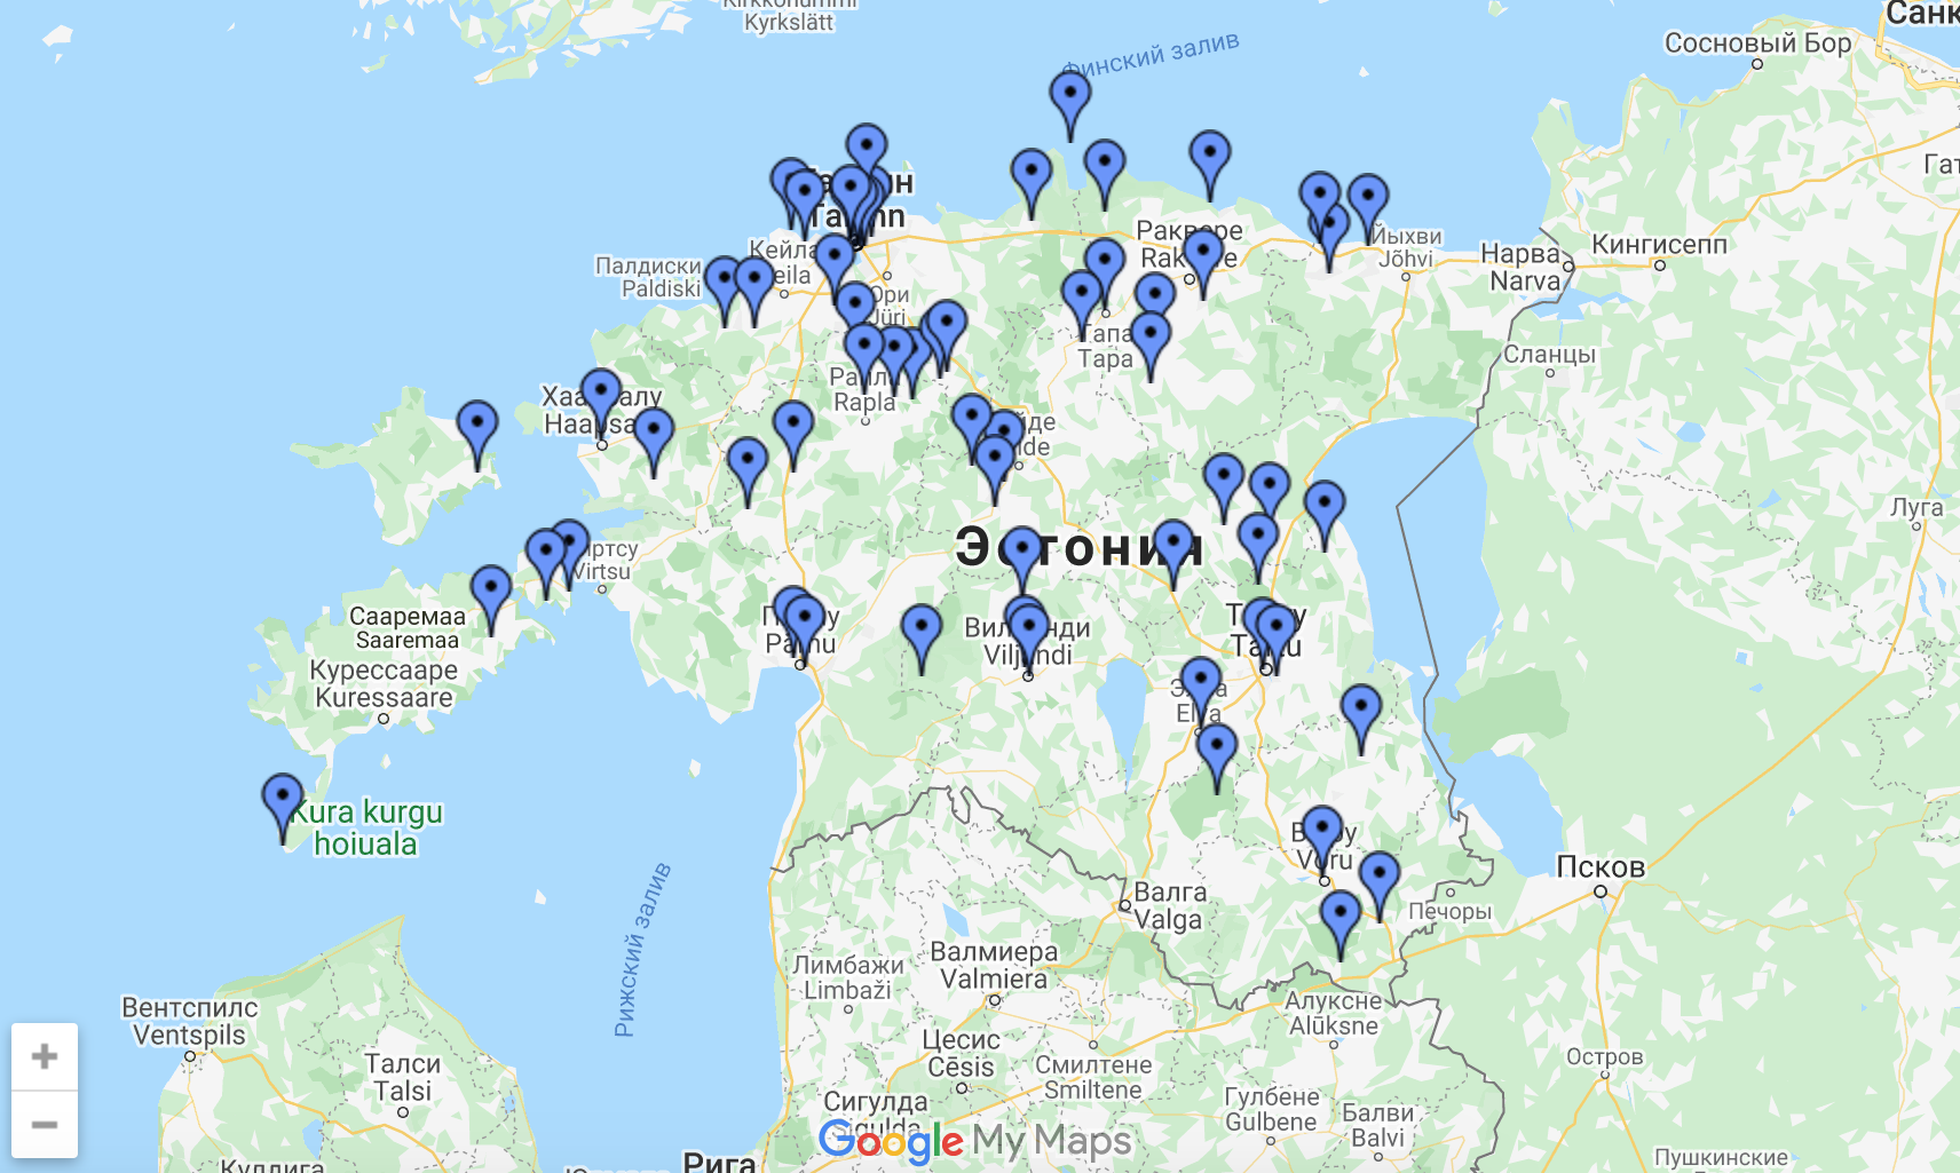 Форум эстонских охотников за привидениями Para-web даже создал специальную карту, на которой отмечены все места, в которых была замечена паранормальная активность. Таких отметок на карте - 62 штуки.